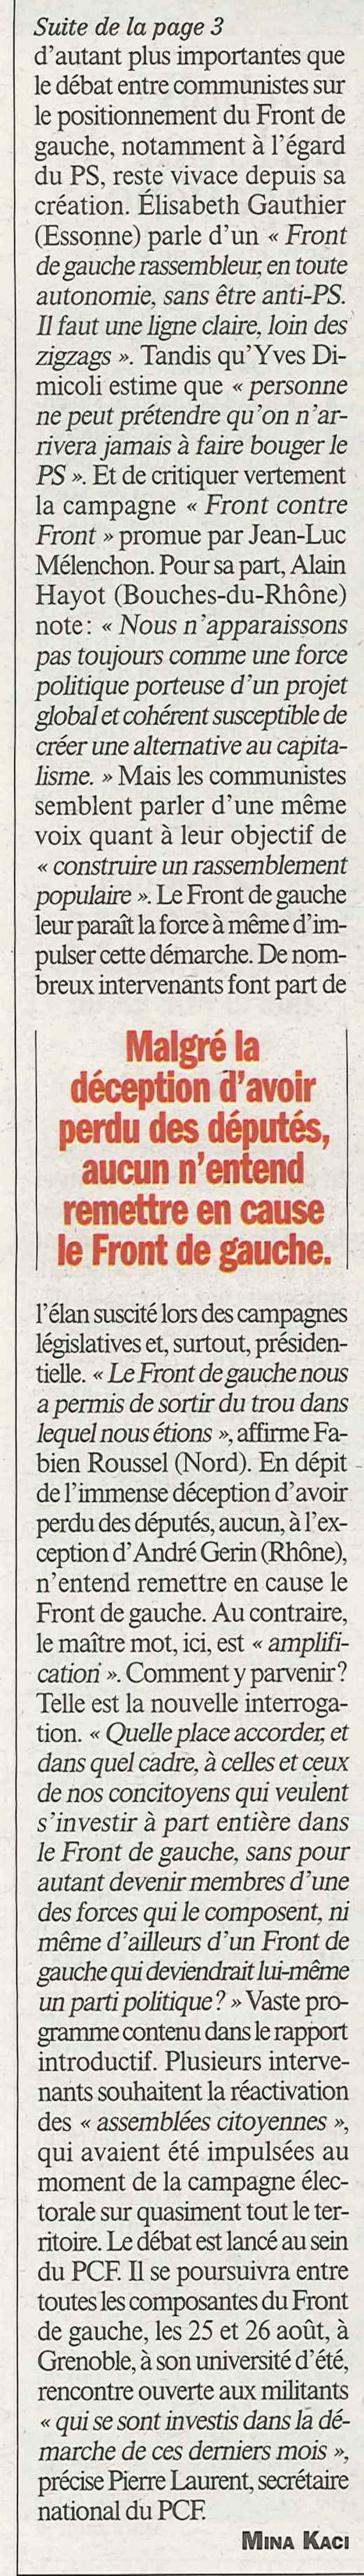 20120621-L'Huma-France-Le choix du Front de gauche pour le PCF